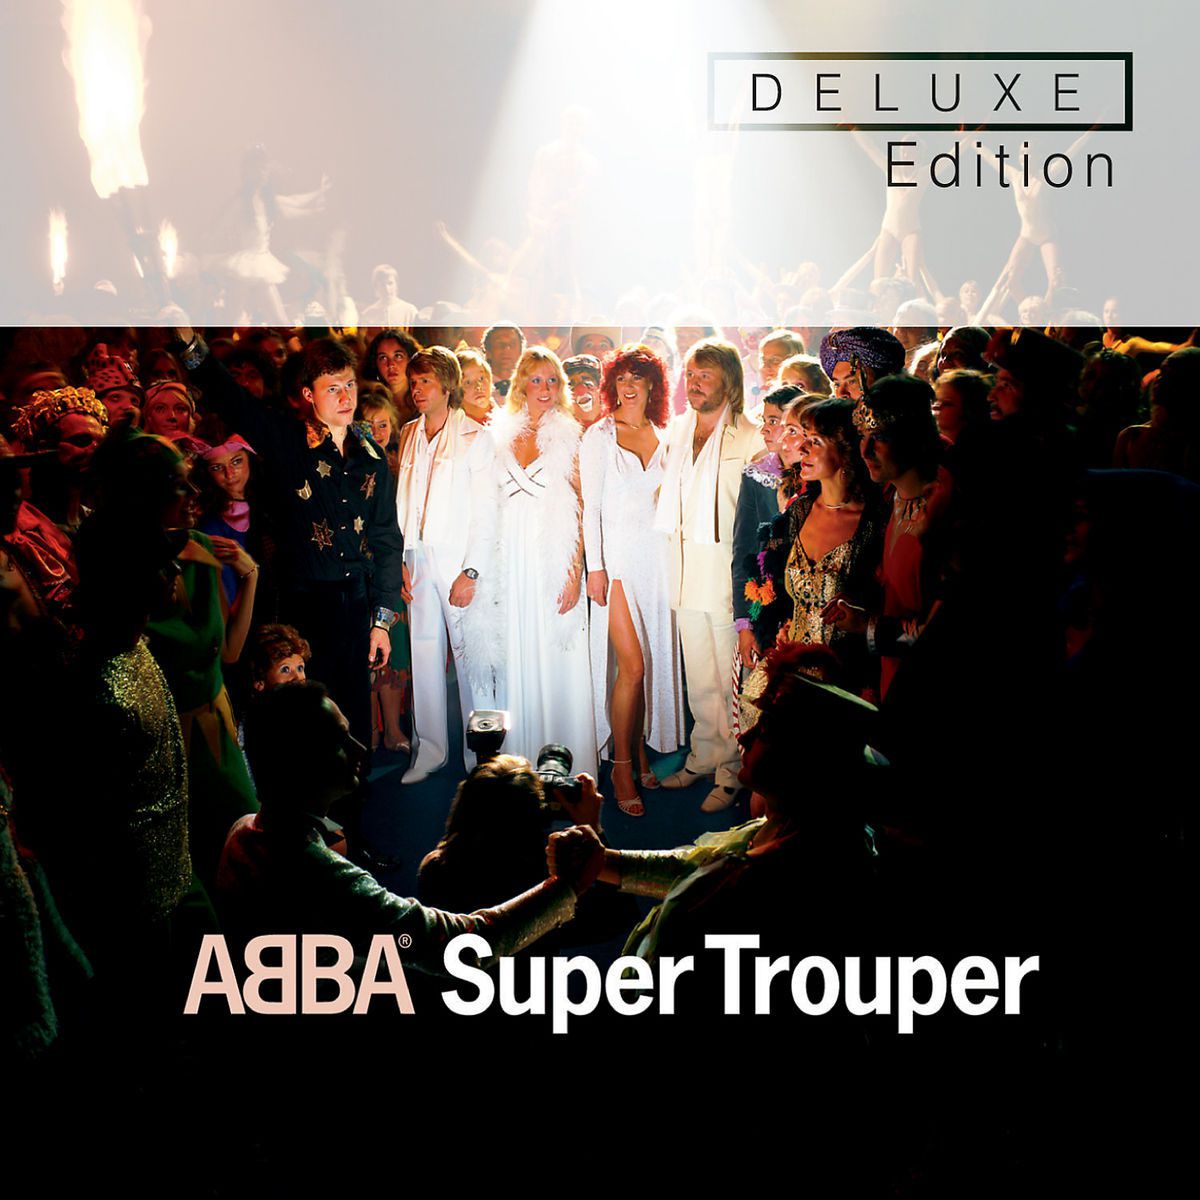 ABBA: Das sind die bisherigen 8 Studio-Alben der Kultband